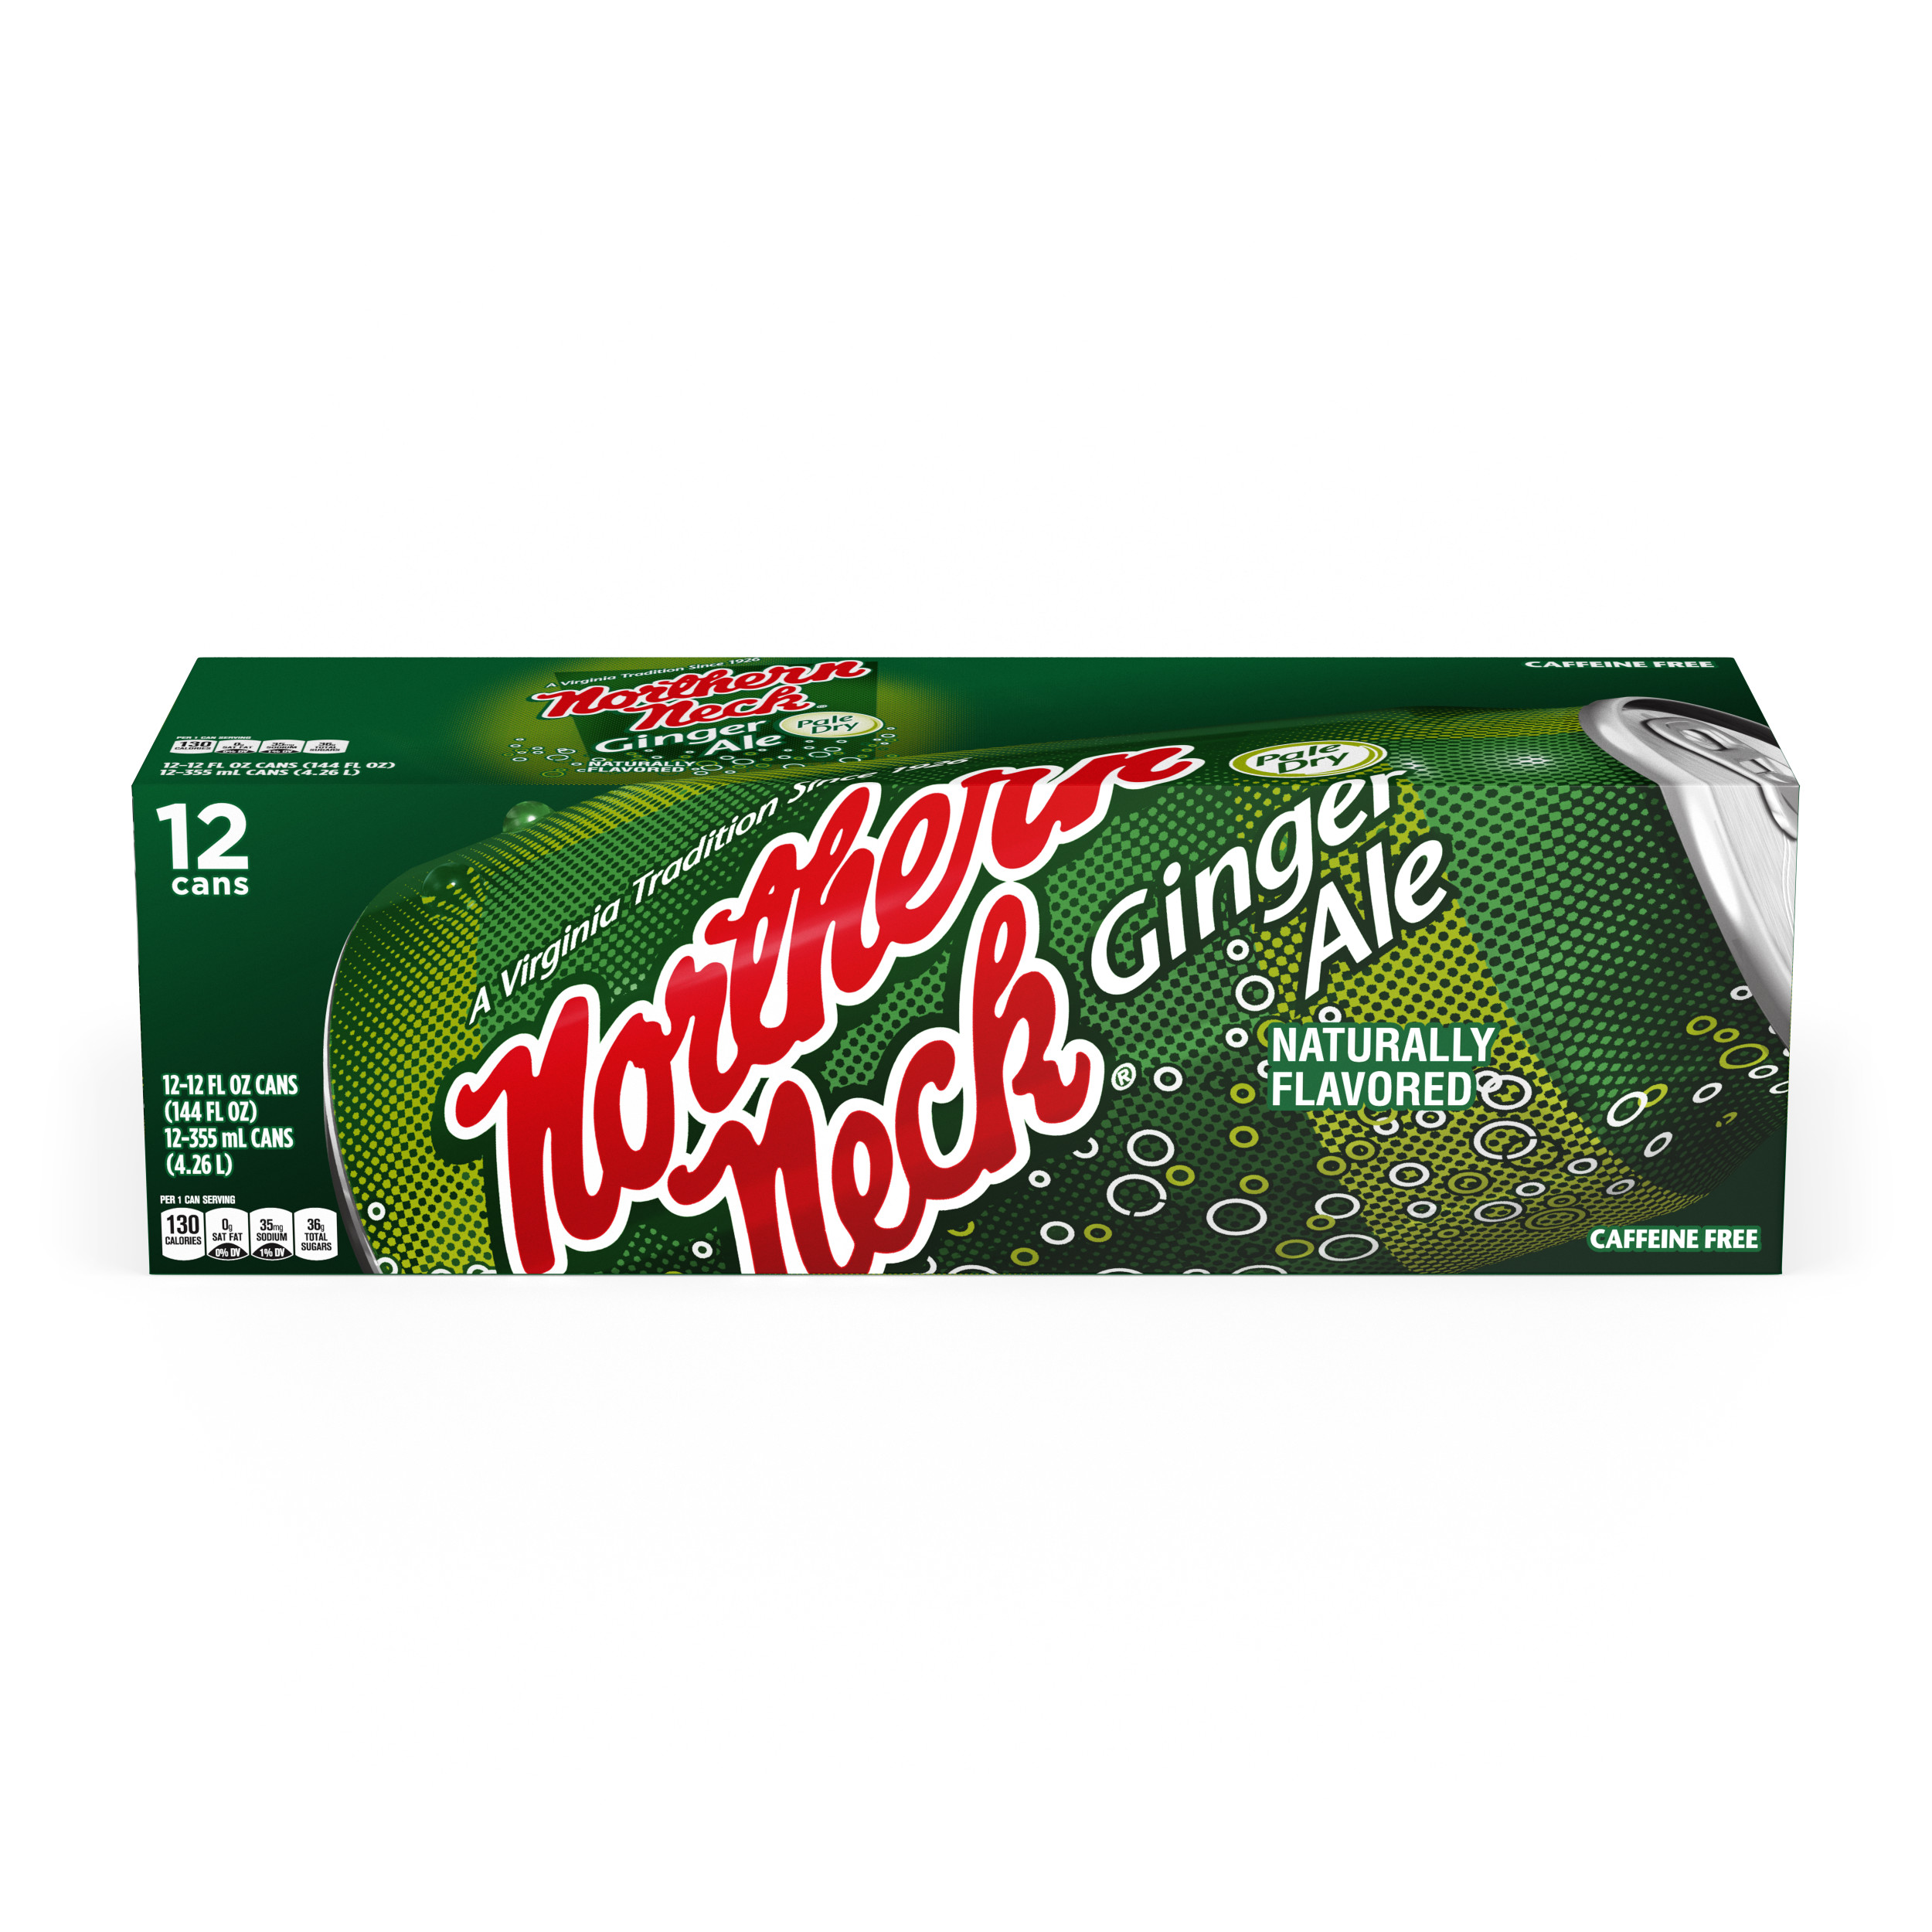 Northern Neck Ginger Ale Fridge Pack Cans, 12 fl oz, 12 Pack - image 1 of 4